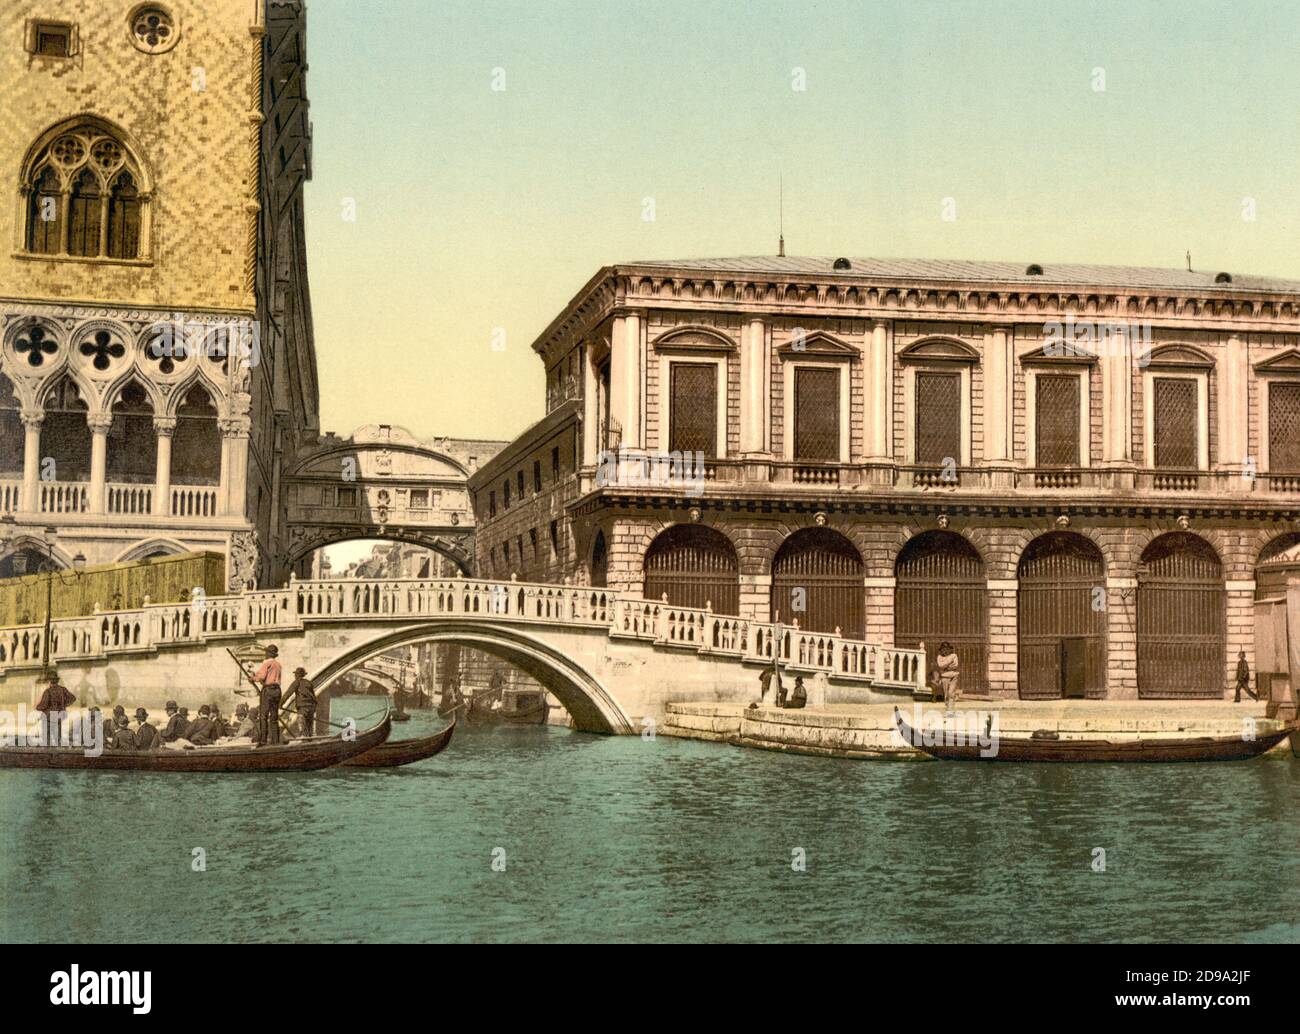 1895 ca. , VENEZIA ,  ITALY : The  PONTE DEI SOSPIRI  ( The Bridge of Sighs ) . Photochrom print colors edited by Detroit Publishing Co.  -  VENICE - VENETO -  ITALIA - FOTO STORICHE - HISTORY - GEOGRAFIA - GEOGRAPHY  - ARCHITETTURA - ARCHITECTURE  -     - ARTS - ARTE - OTTOCENTO - 800's - '800 - VENETO   ----  Archivio GBB Stock Photo